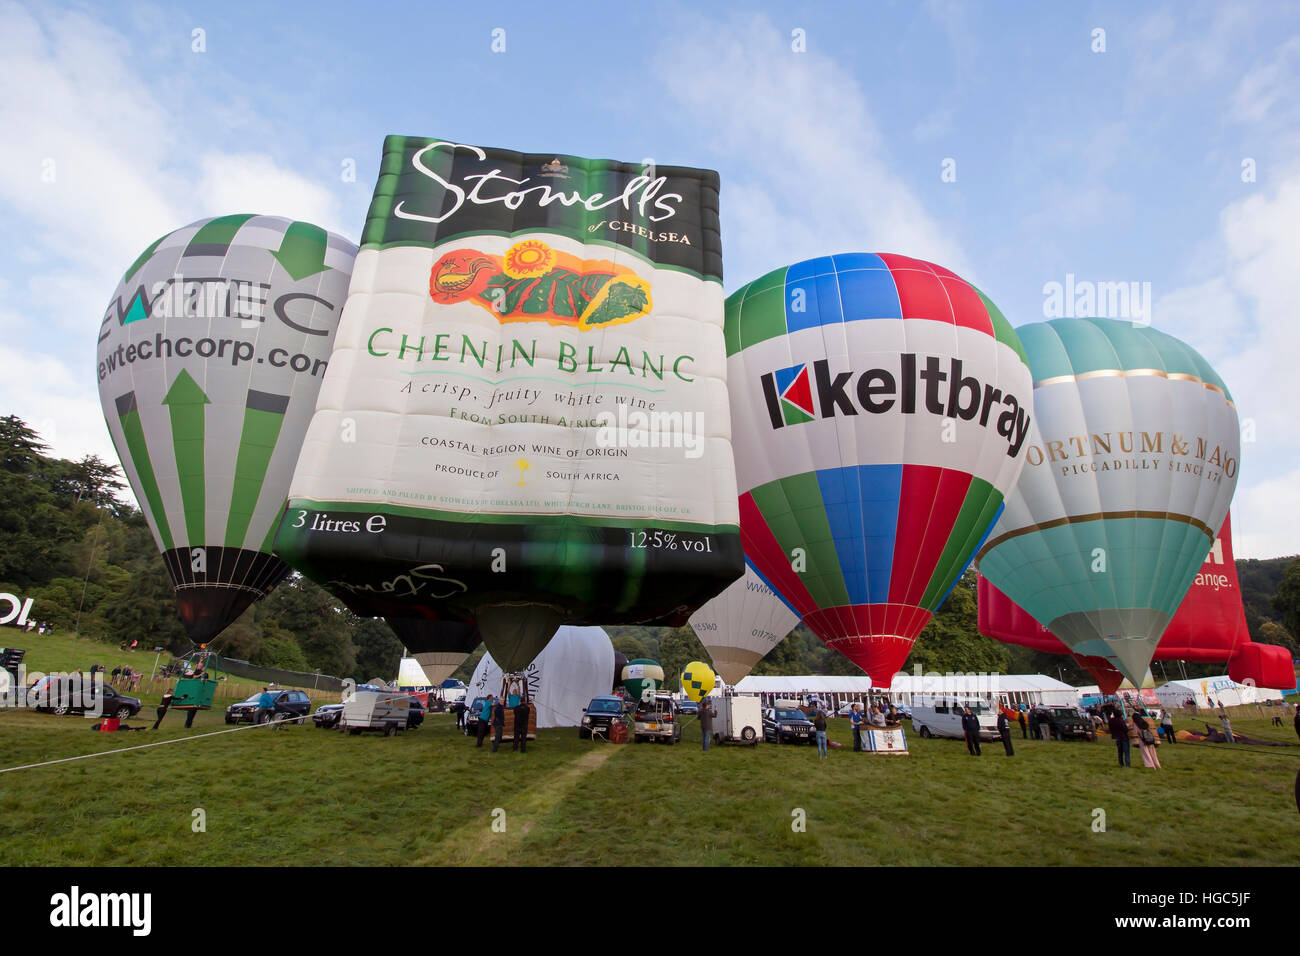 Stowels Kewtech Keltbray,Vin, ballons à air chaud à Bristol International Balloon Fiesta 2016 Banque D'Images